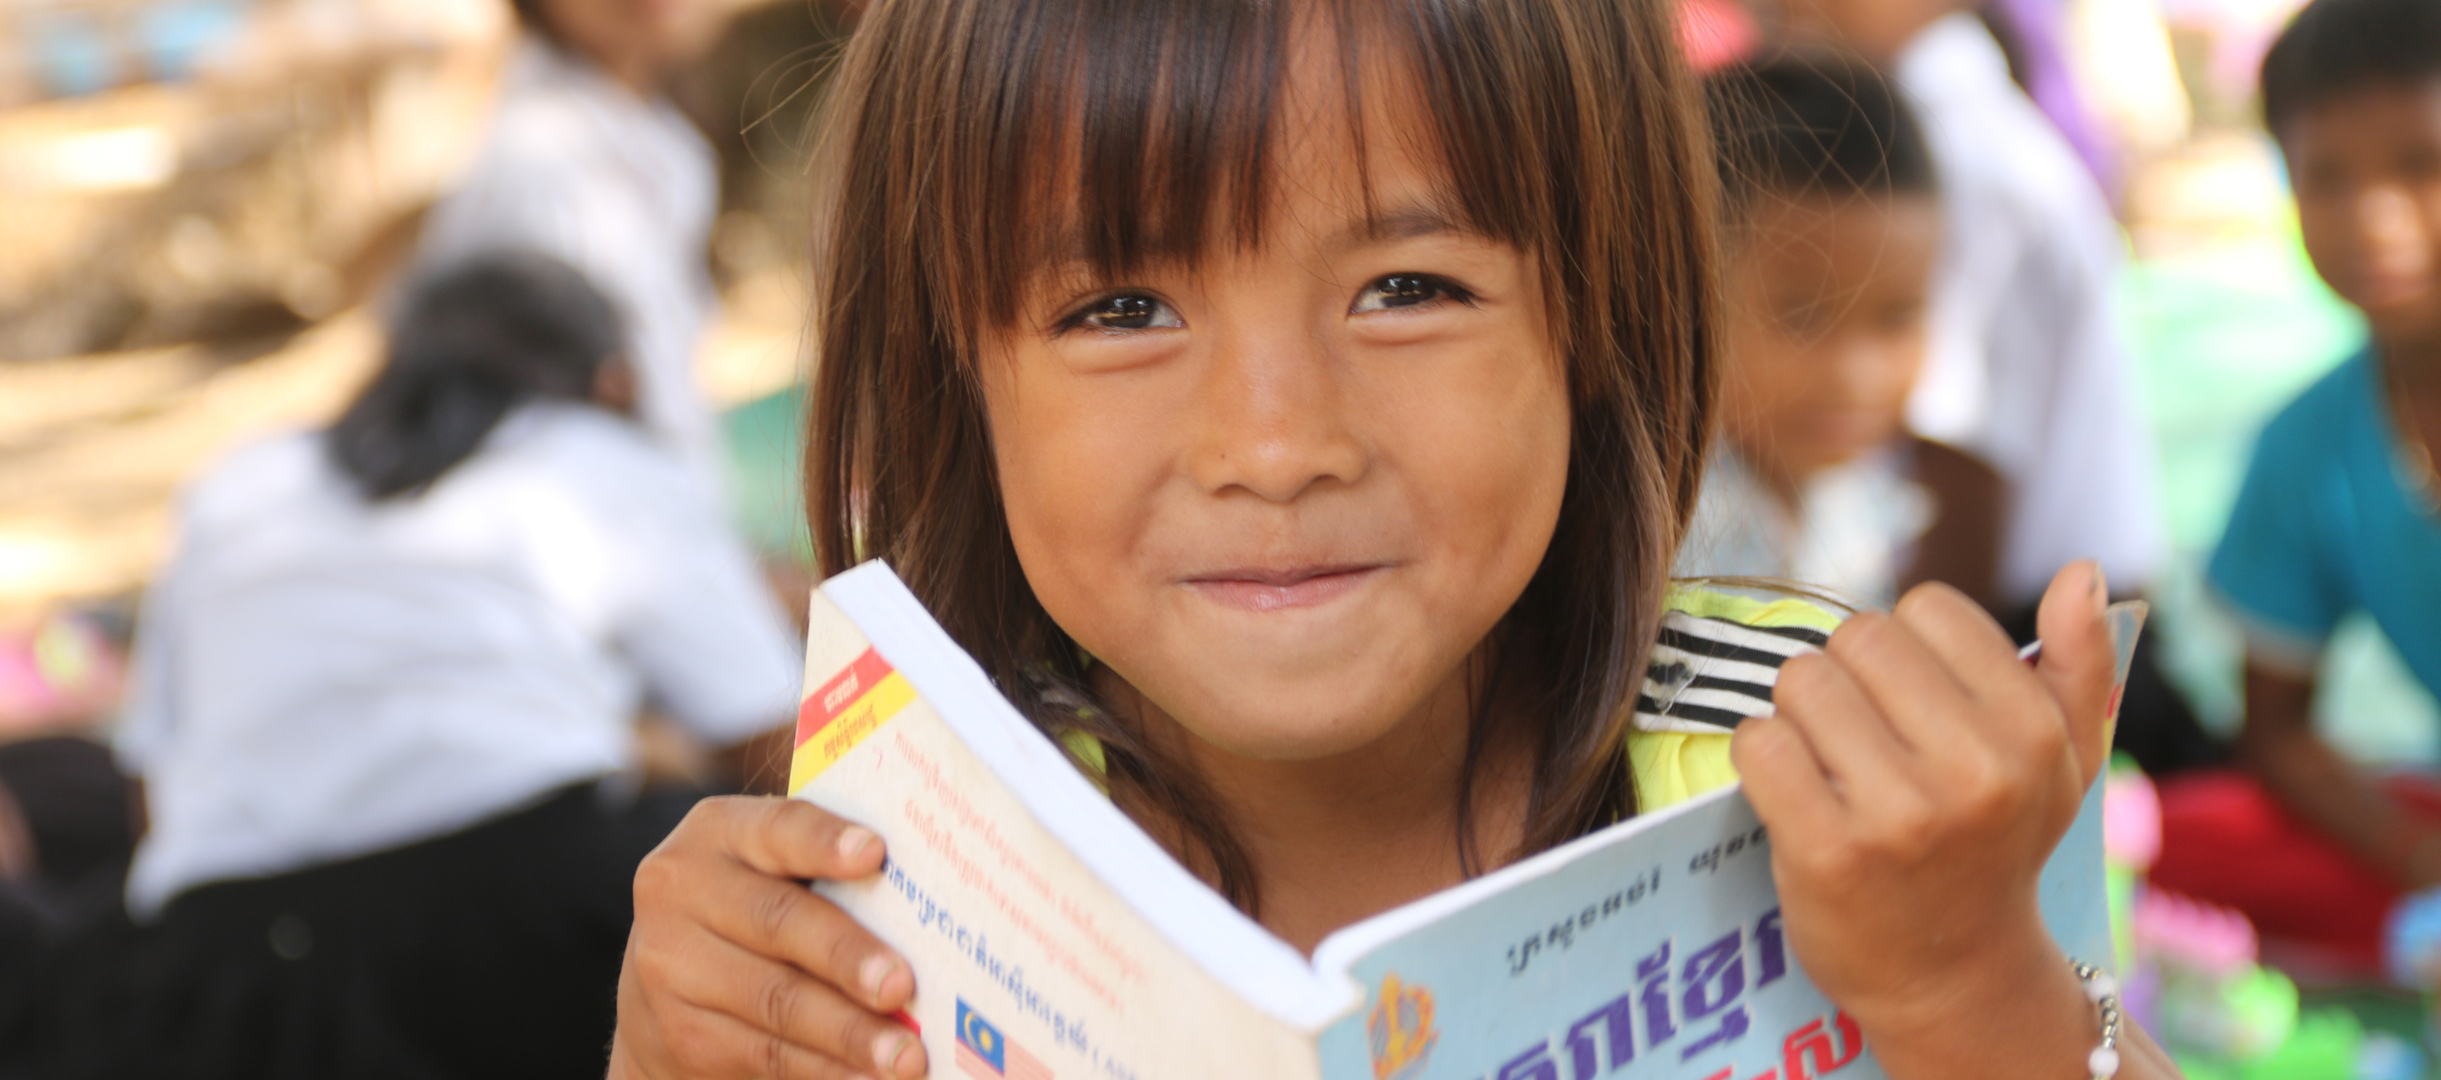 Patenkind aus Kambodscha liest in einem Buch